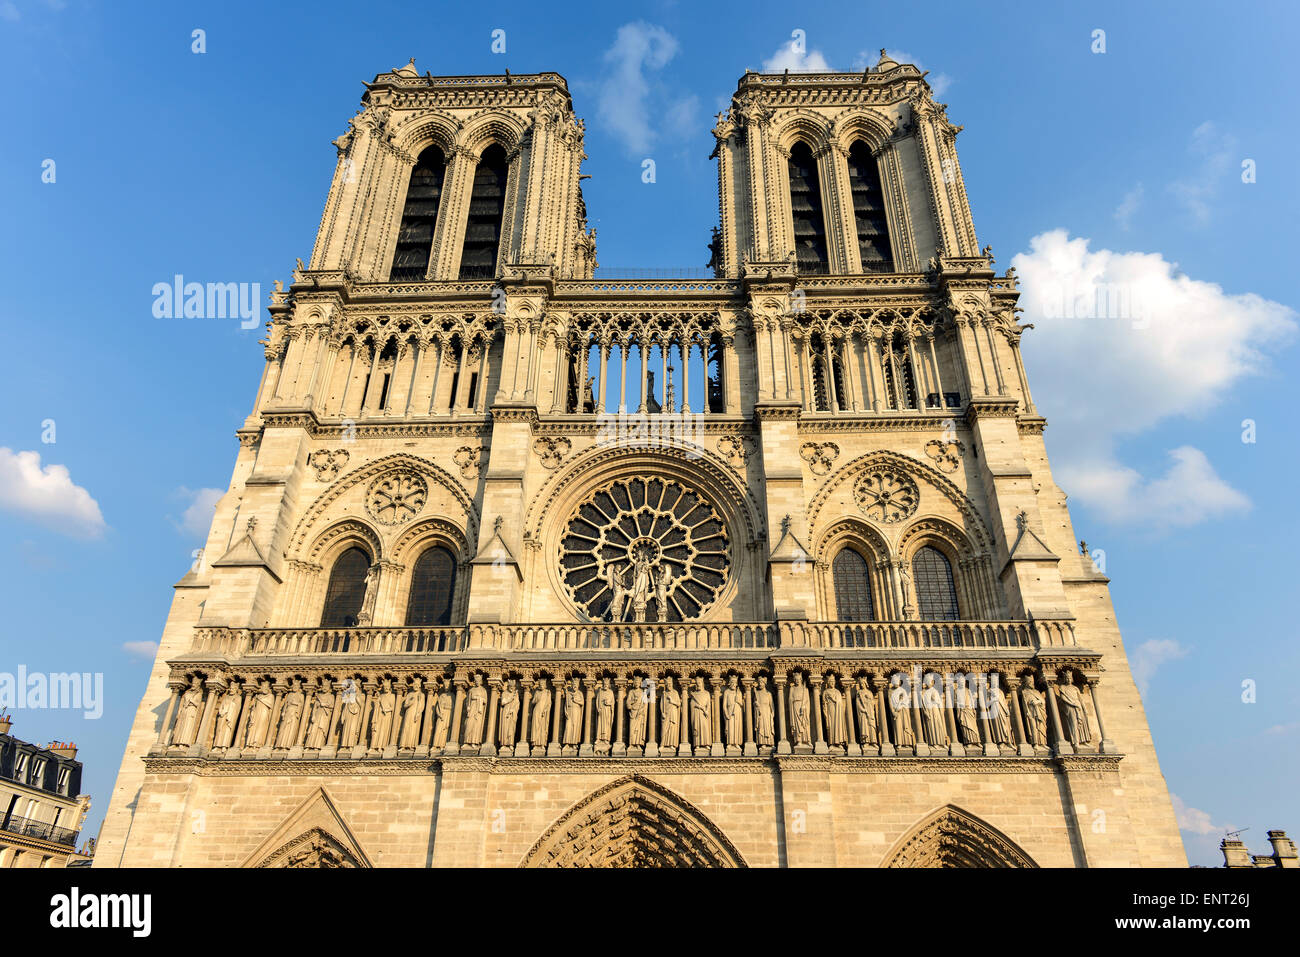 La Cathédrale Notre Dame de Paris, façade ouest, île de La Cité, Paris, France Banque D'Images